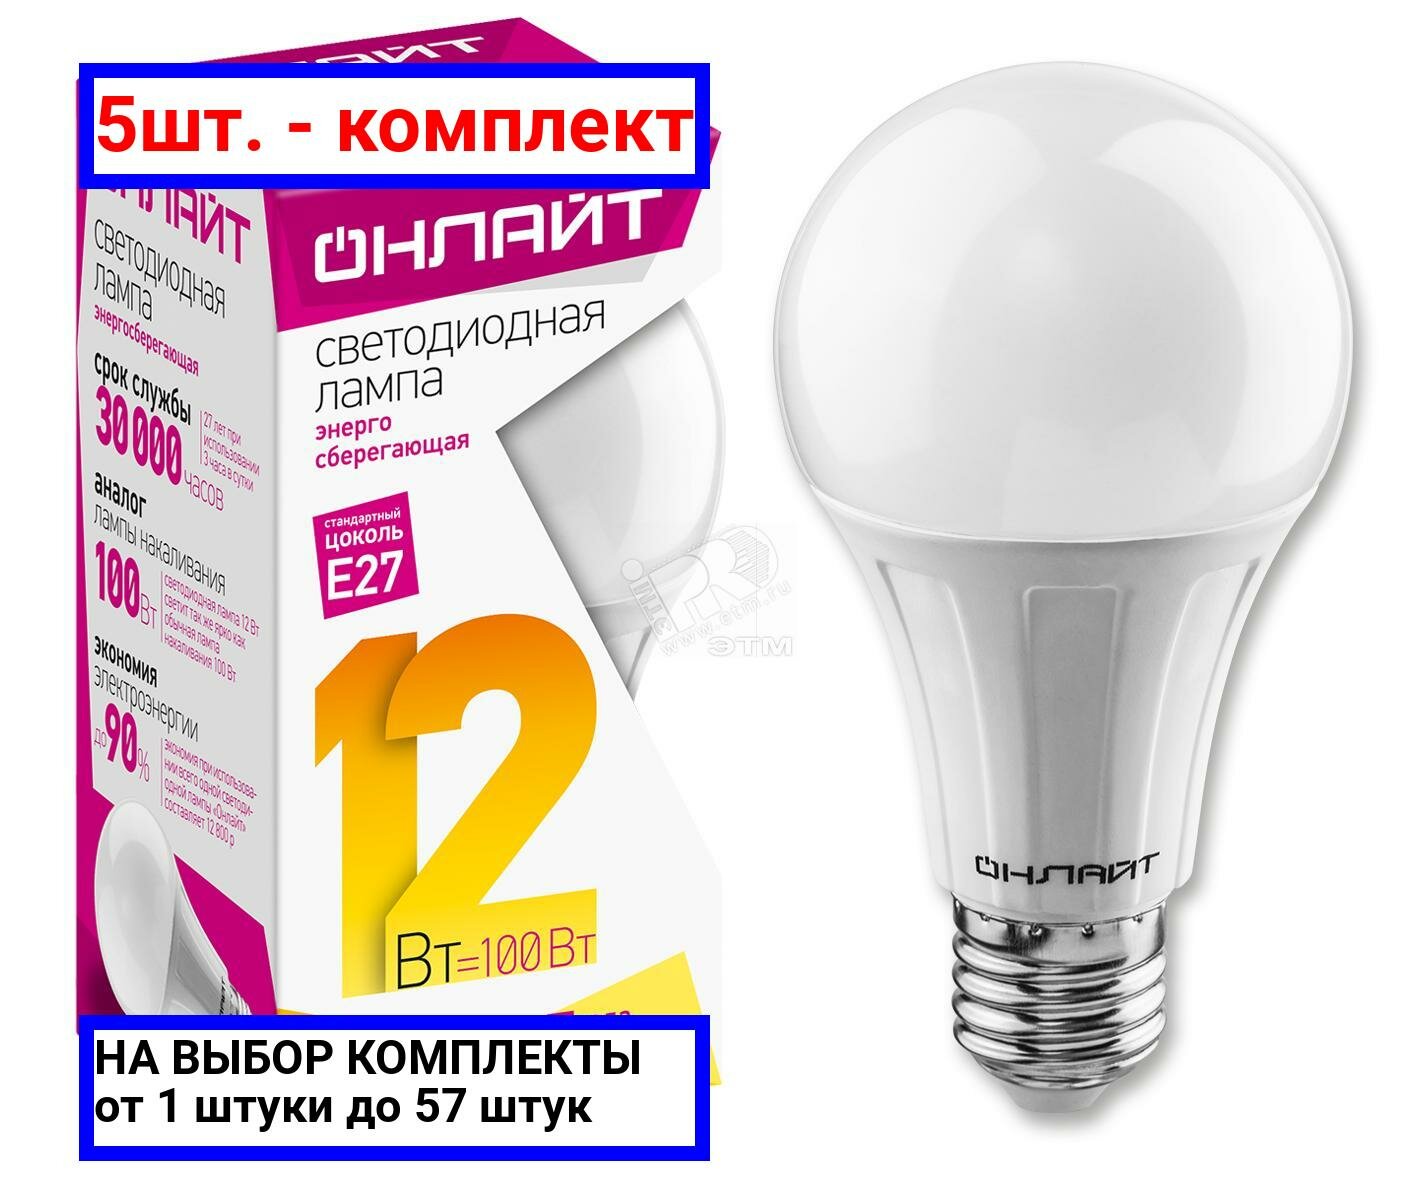 5шт. - Лампа светодиодная LED 12вт E27 теплый / онлайт; арт. 71682 ОLL-A60; оригинал / - комплект 5шт